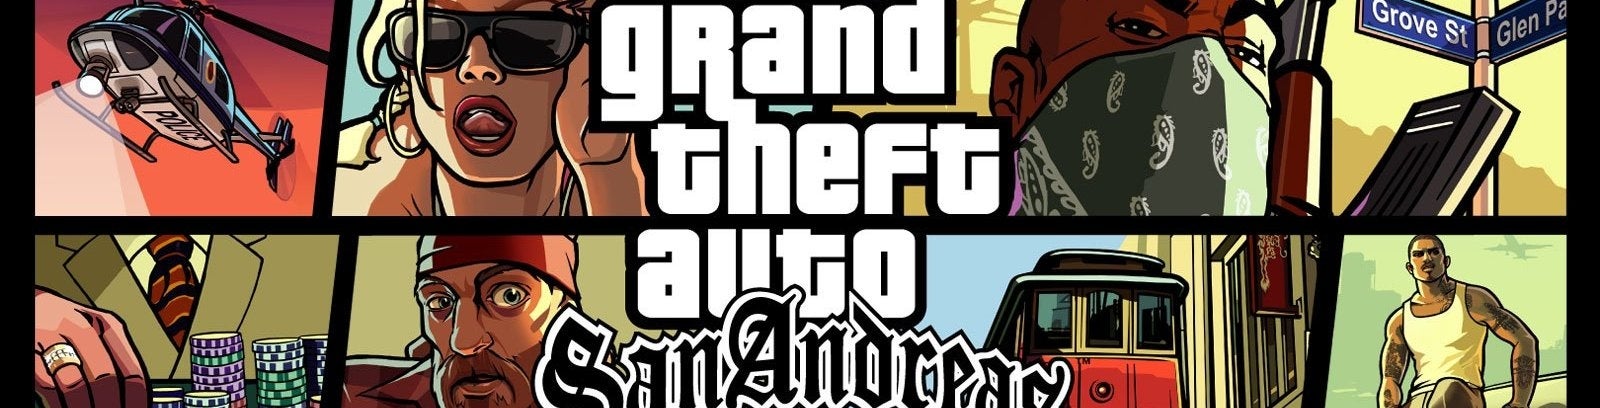 Afbeeldingen van Grand Theft Auto: San Andreas in 720p naar Xbox 360